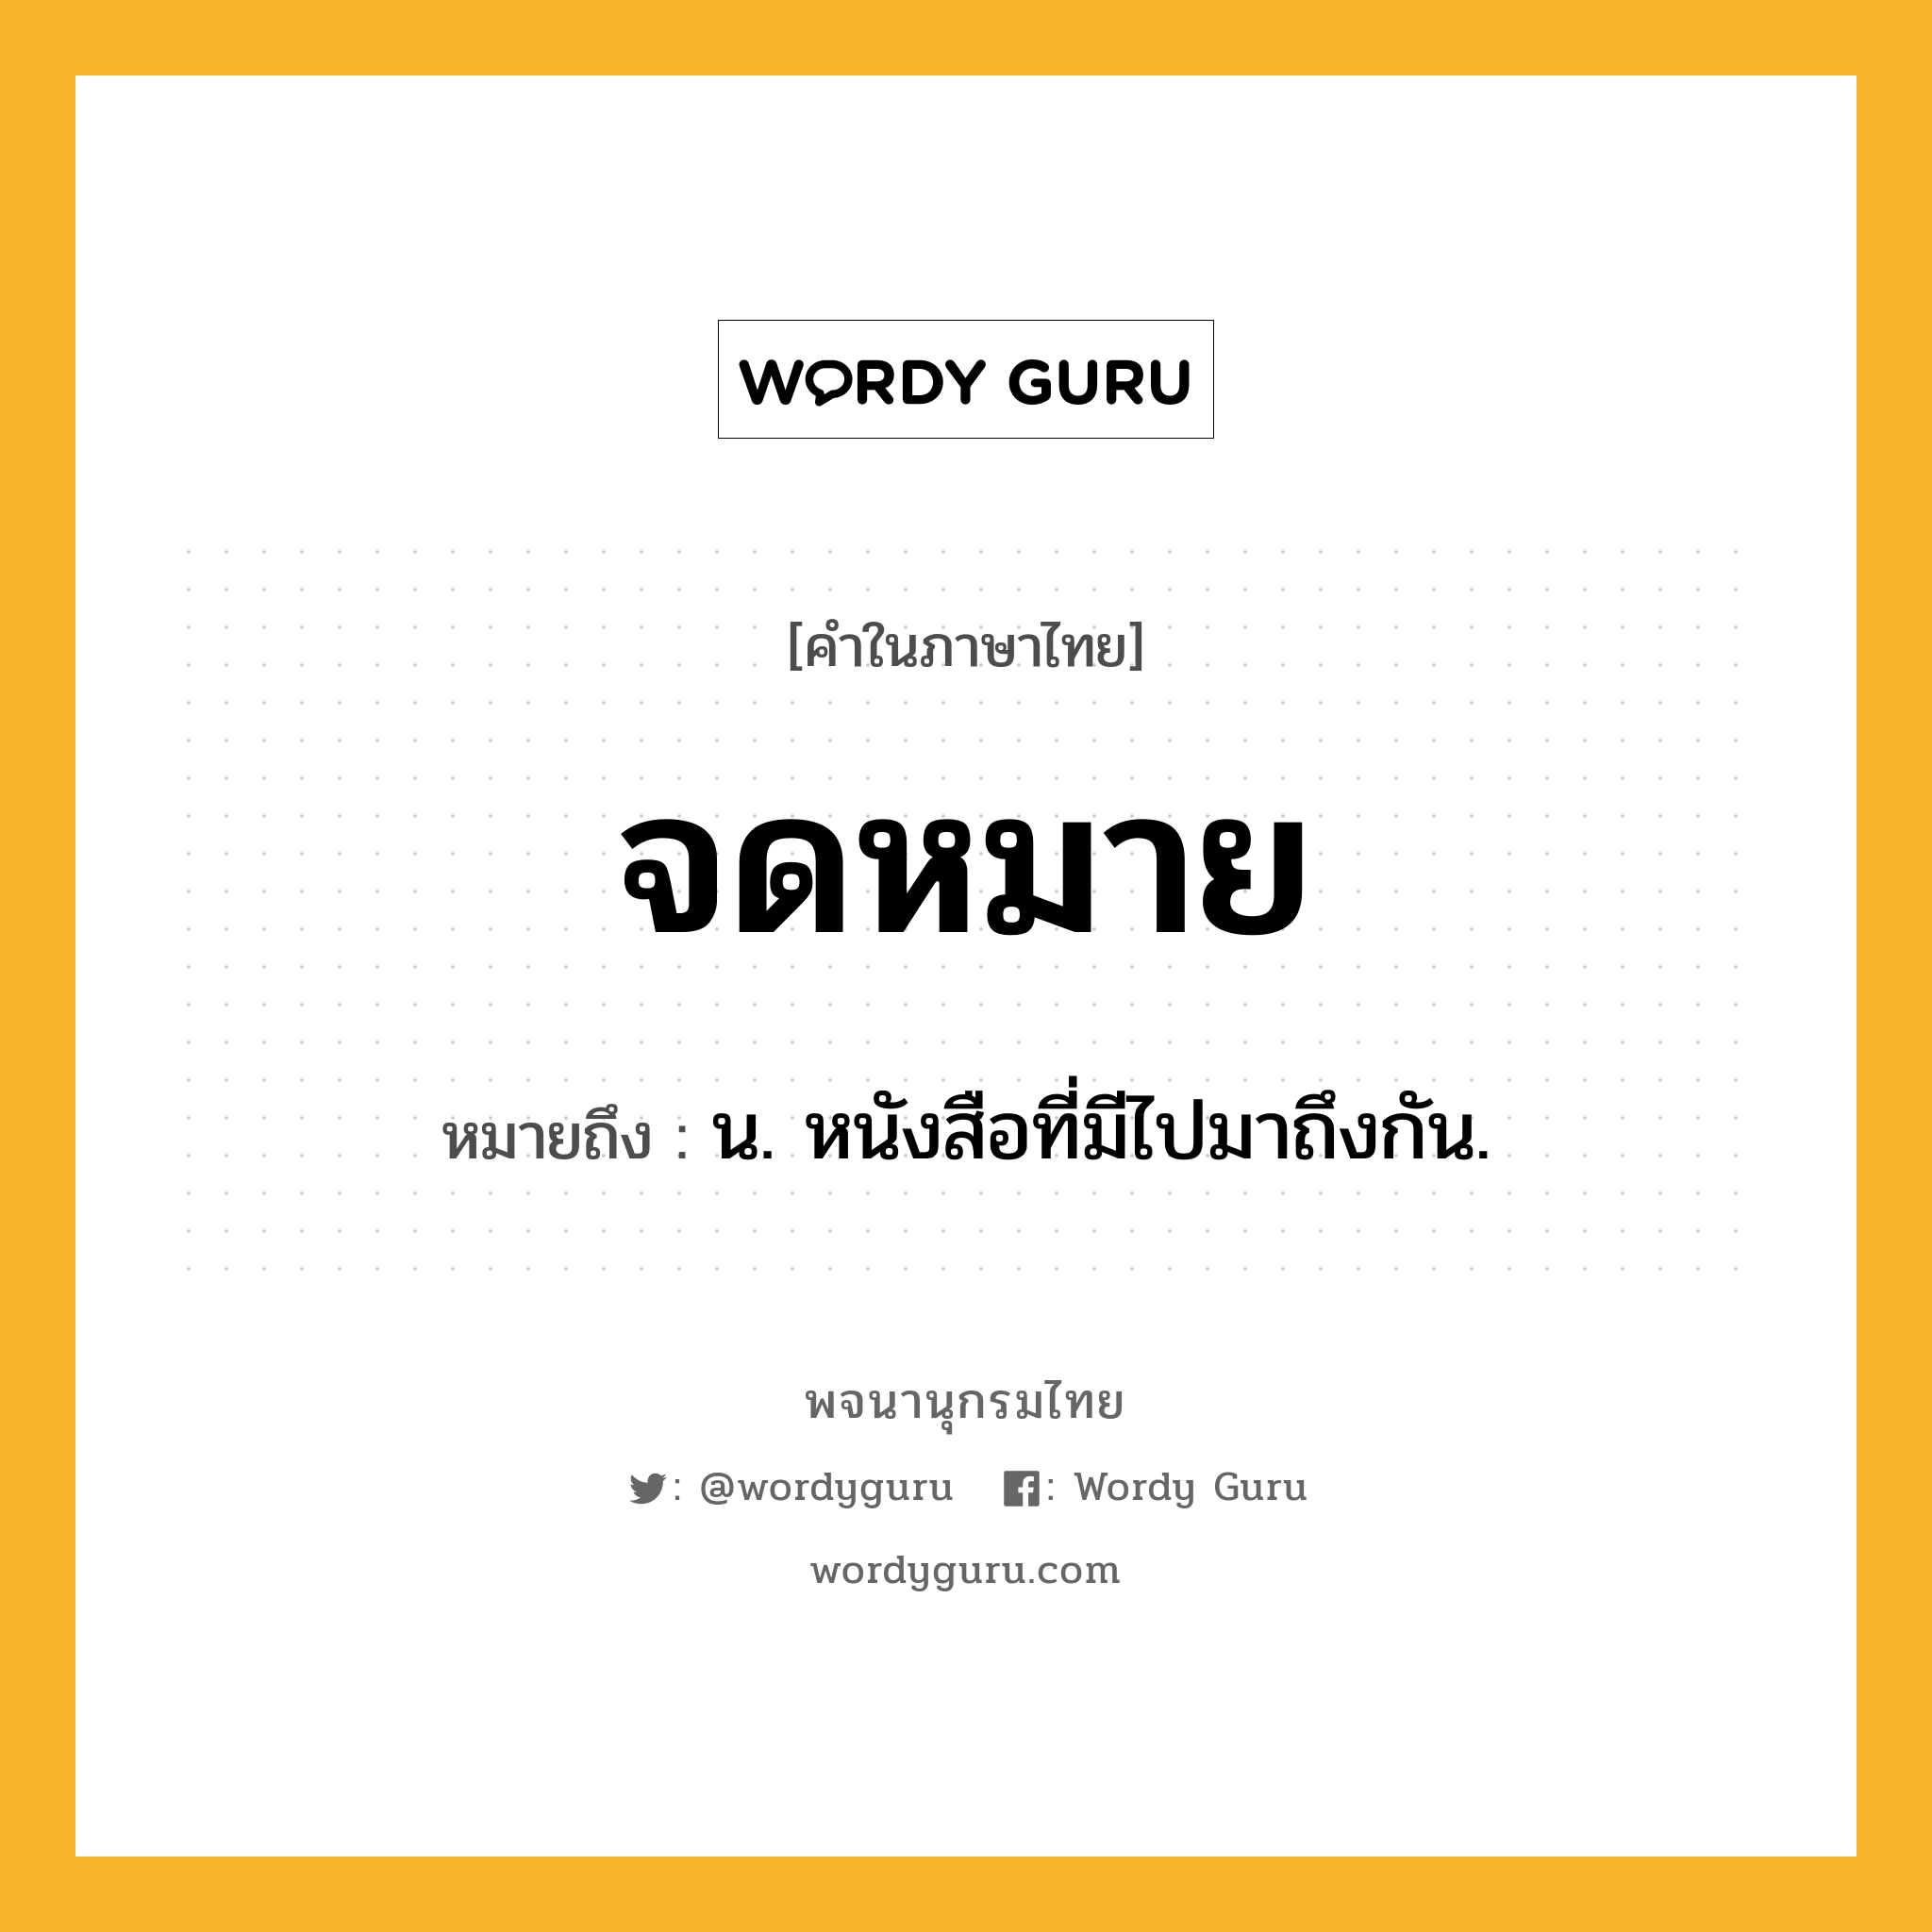 จดหมาย ความหมาย หมายถึงอะไร?, คำในภาษาไทย จดหมาย หมายถึง น. หนังสือที่มีไปมาถึงกัน.